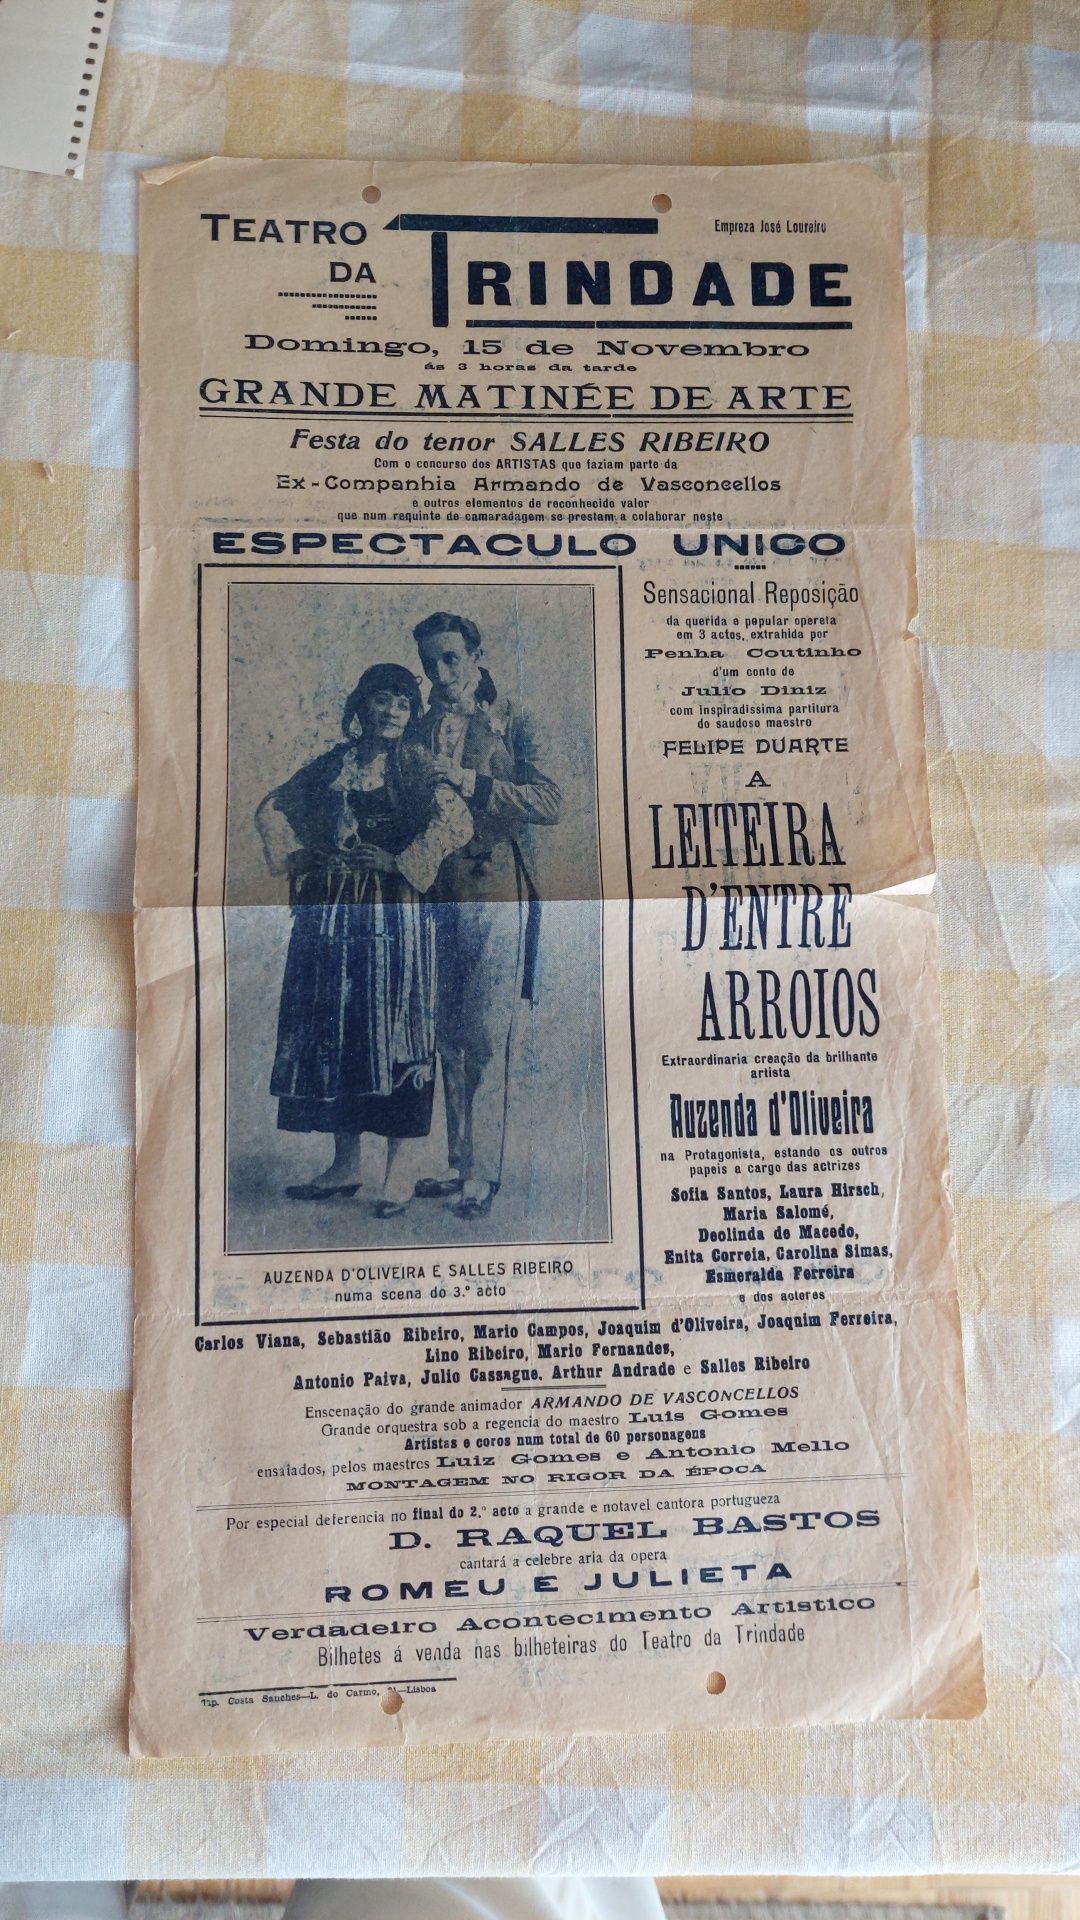 Raro folheto de teatro Trindade muito antigo